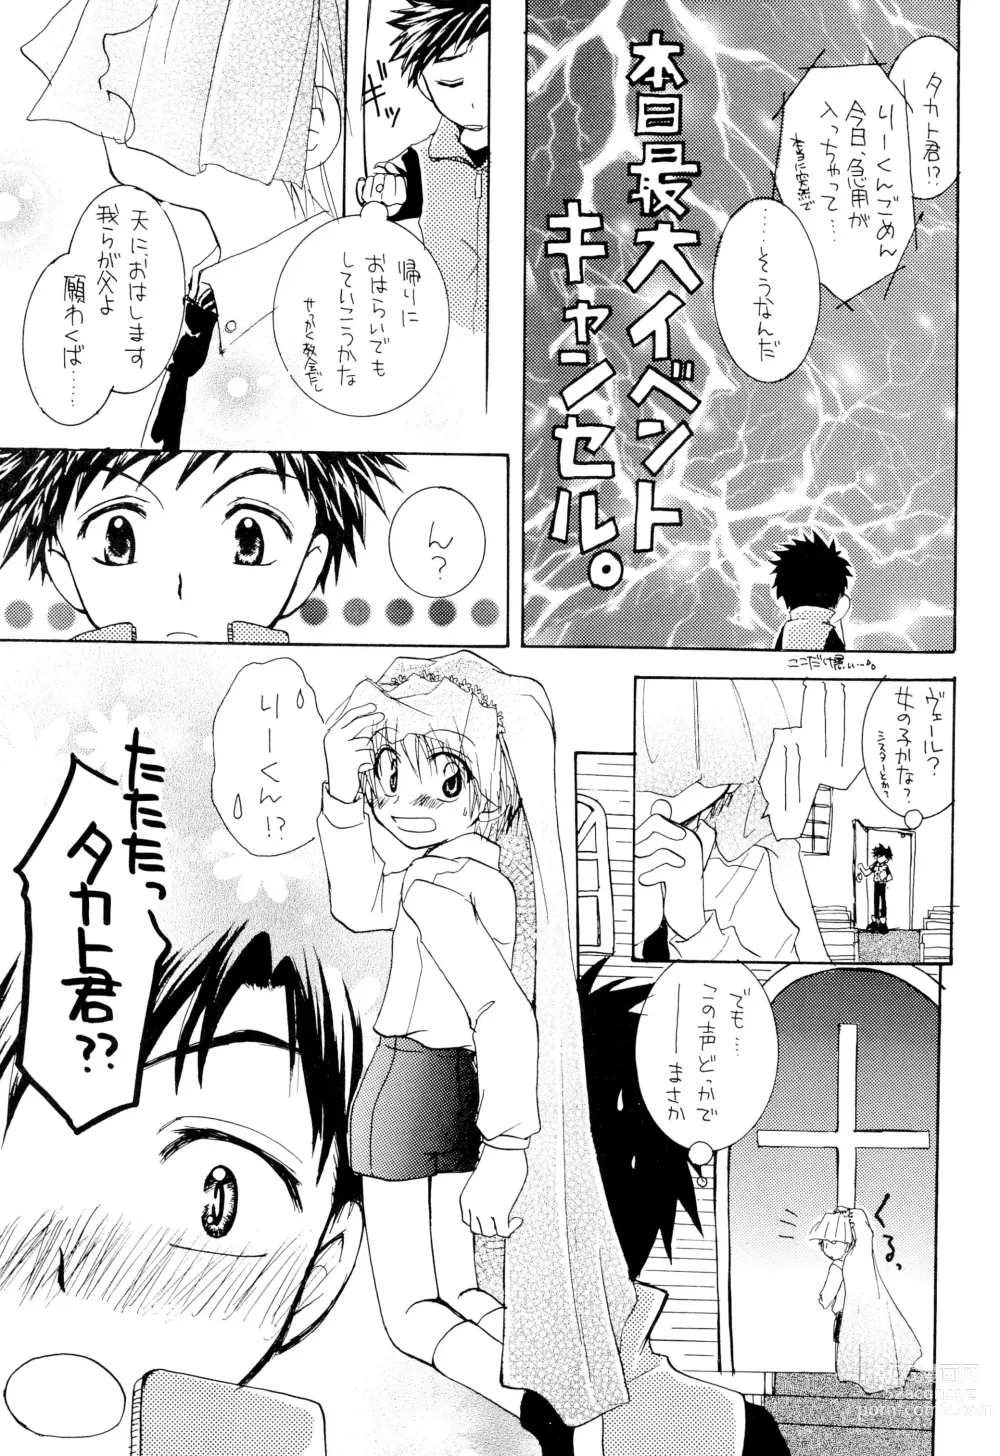 Page 7 of doujinshi LiTaka 2